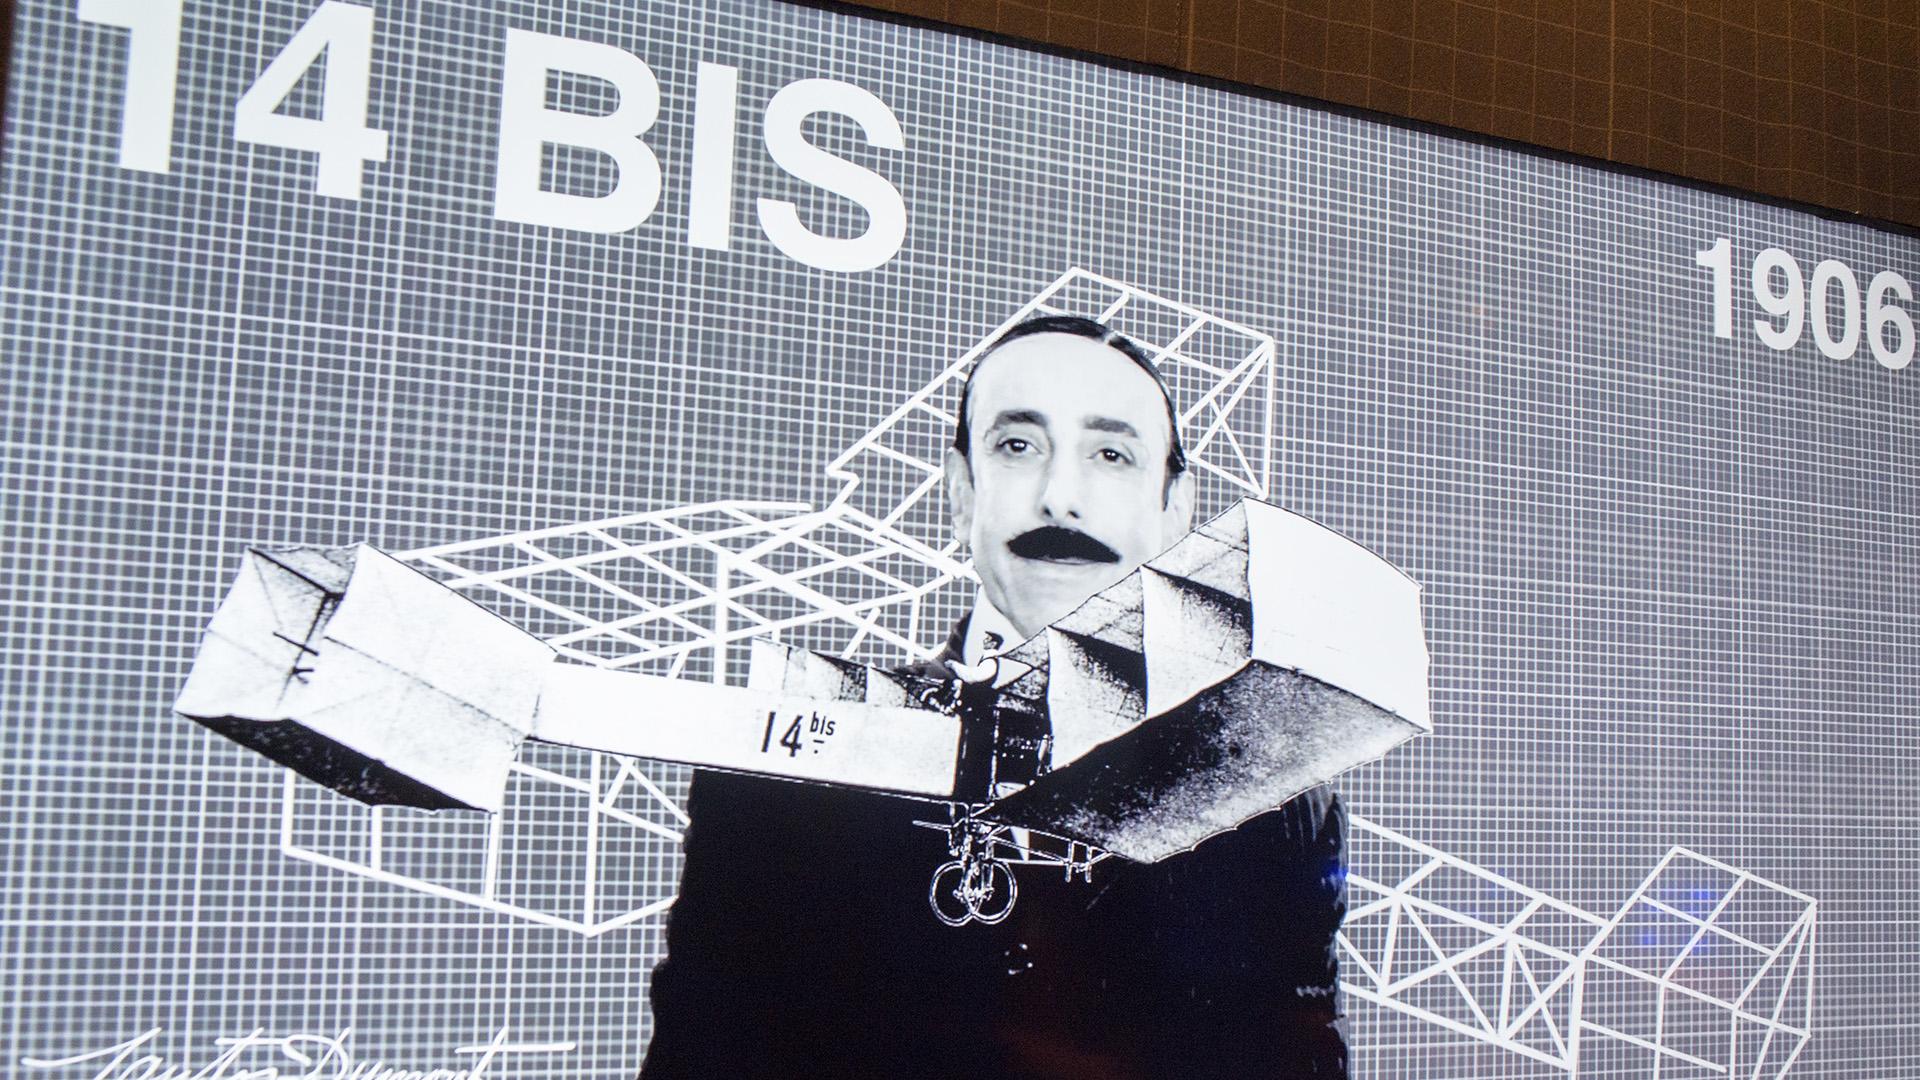 Vídeo da exposição onde um ator interpreta Santos Dumont / Foto: Marcos Tristão - Museu do Amanhã